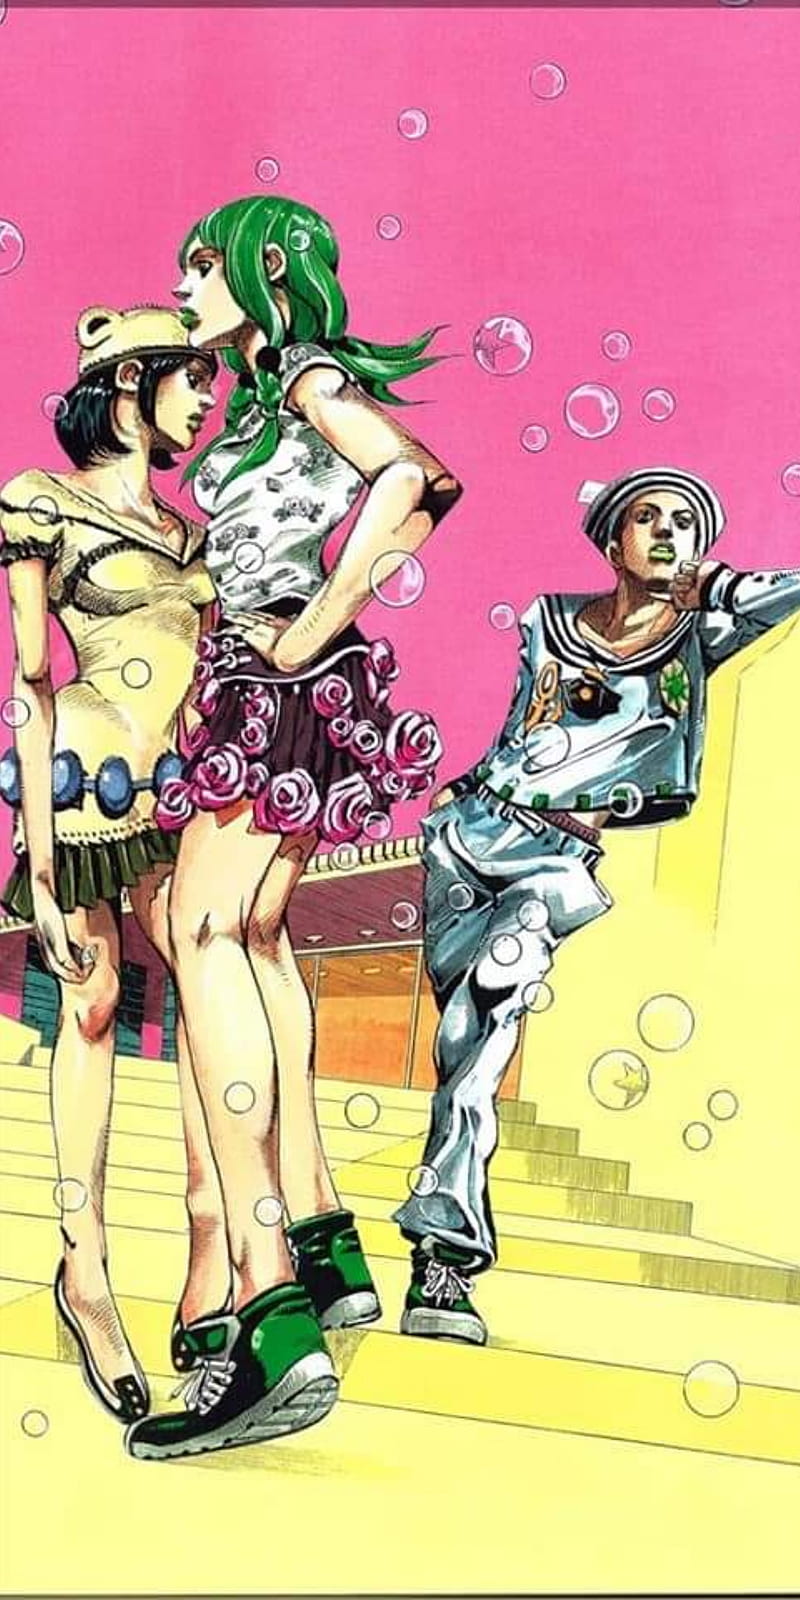 Download Jojolion Manga Cover - Jousuke Higashikata and Soft & Wet Stand  Wallpaper